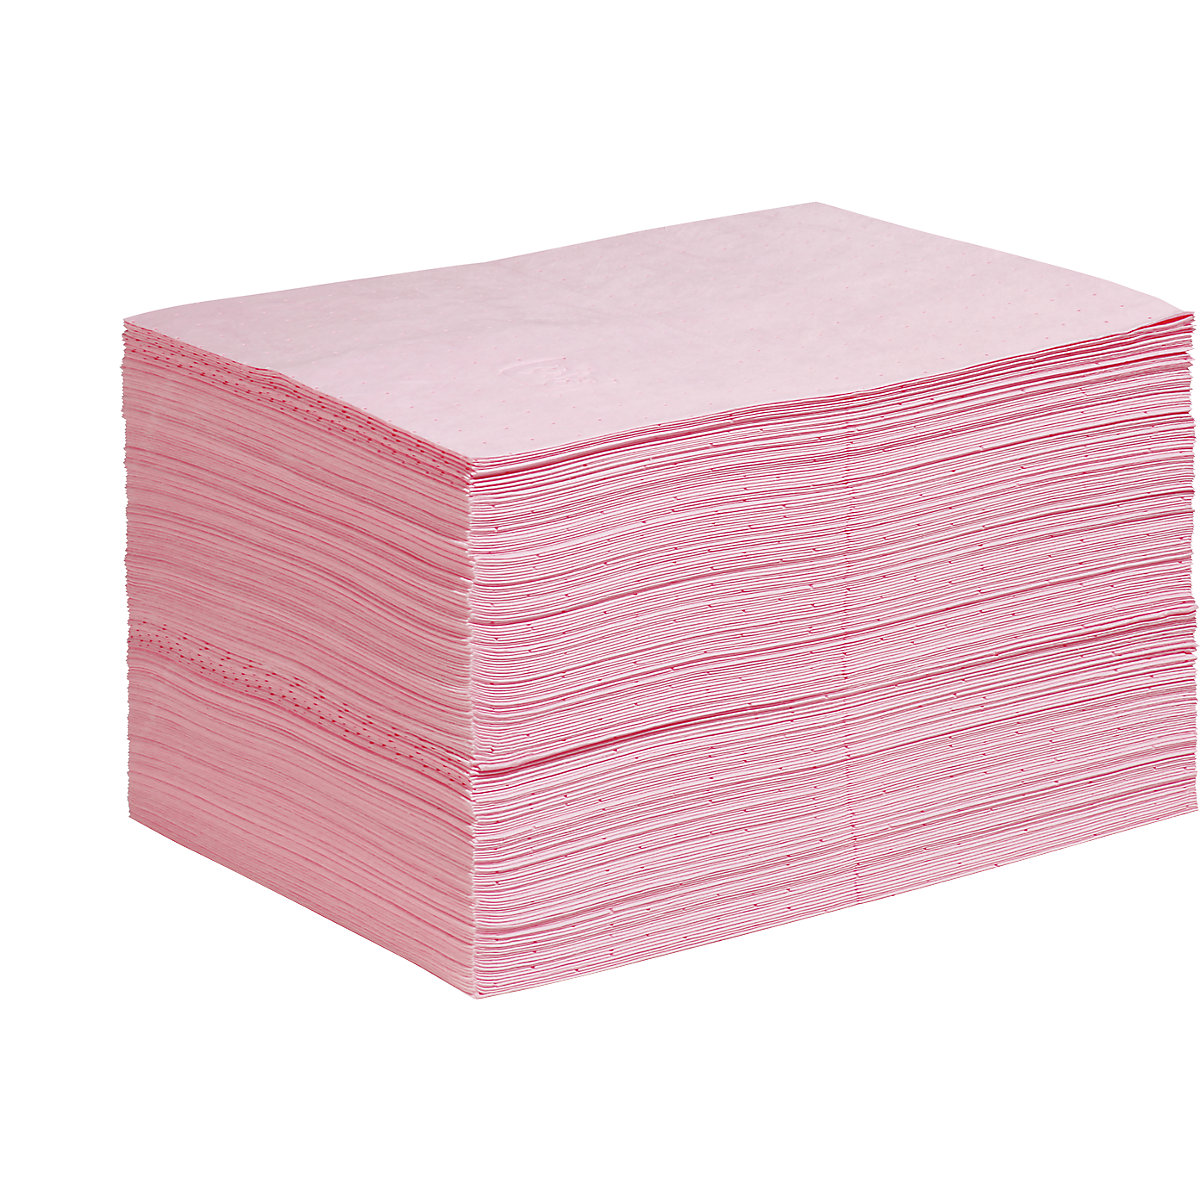 HazMat absorbent sheeting mat - PIG